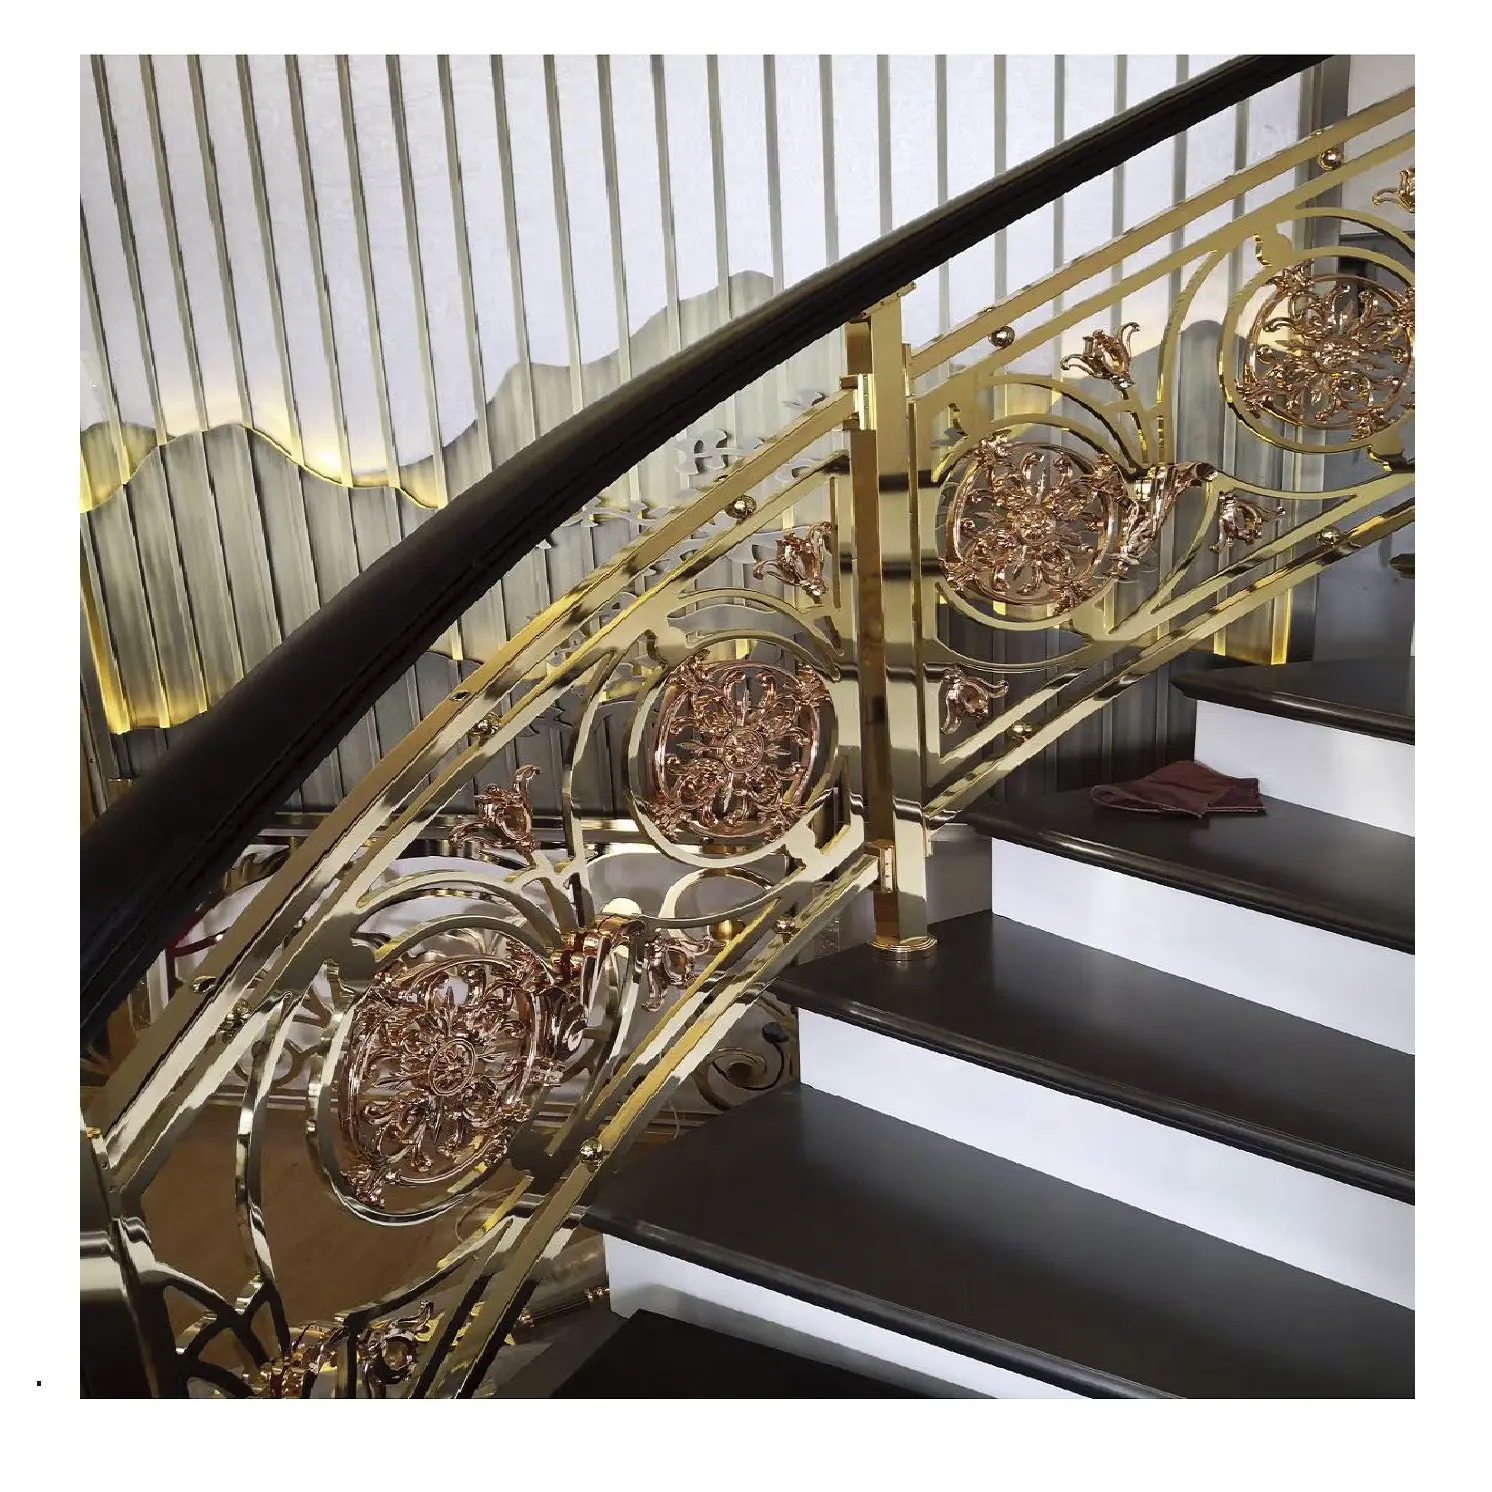 Taka cauda leve estilo de decoração de luxo de latão/alumínio balustrades para escada interior